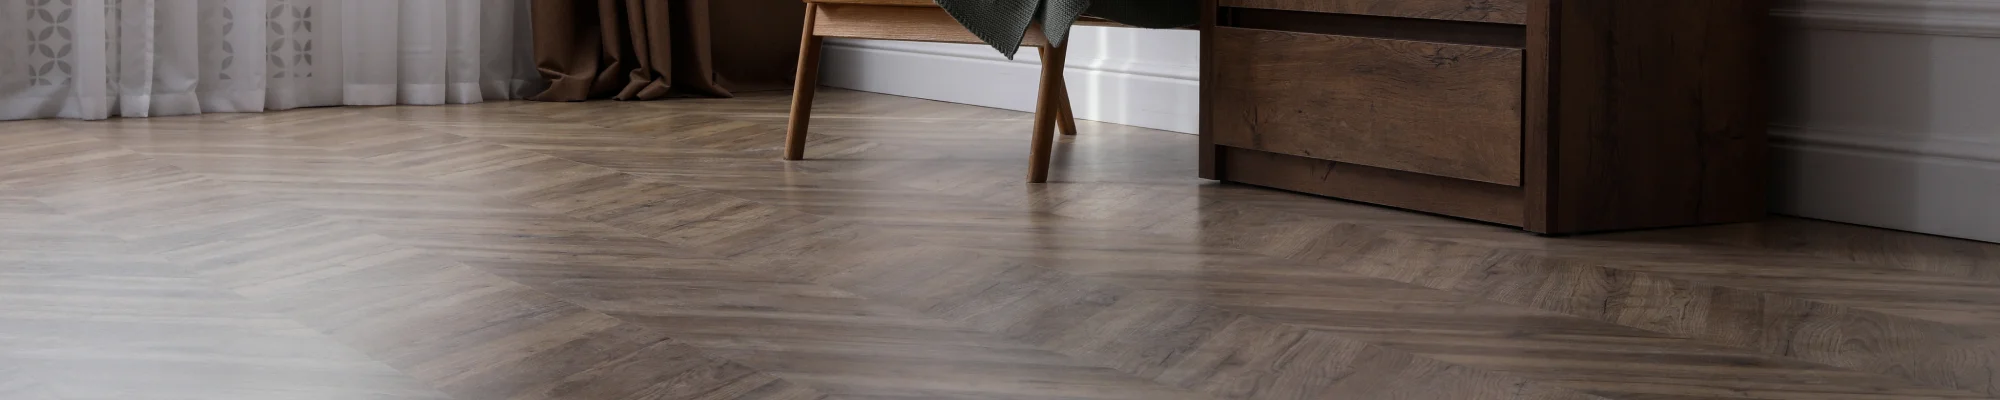 dark and elegant hardwood floors installed in a herringbone pattern